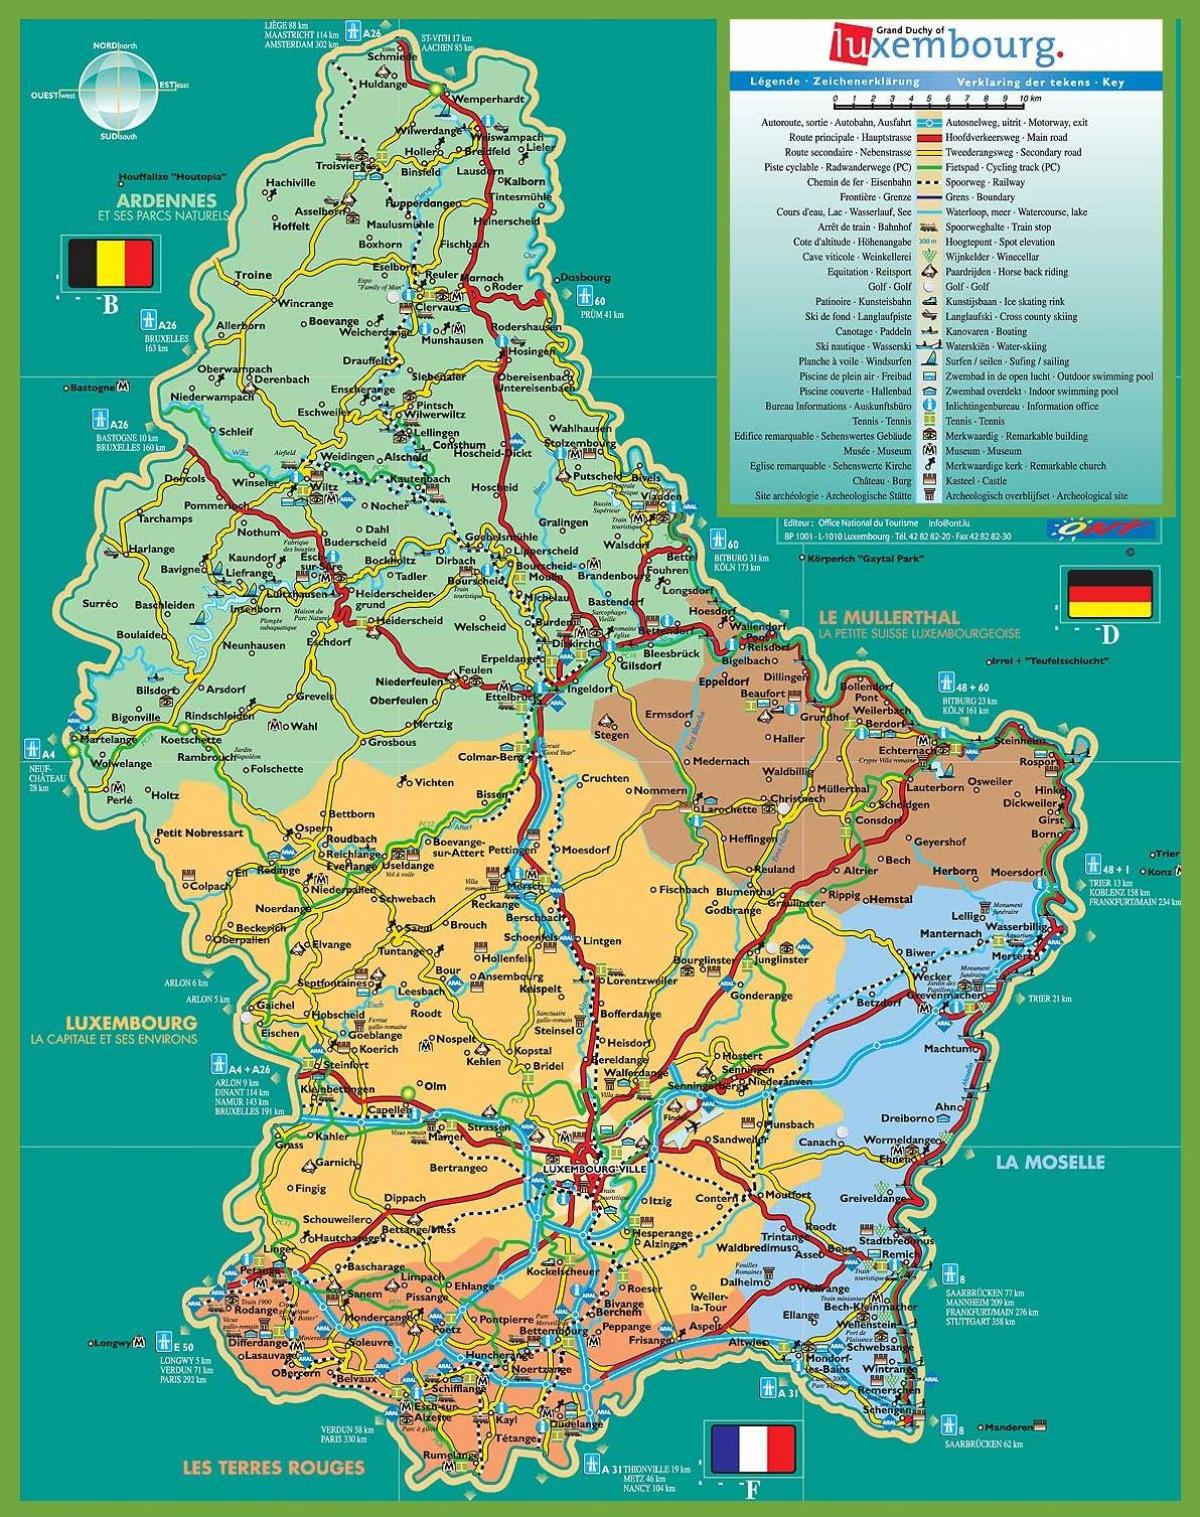 Luxemburg city tourist karta